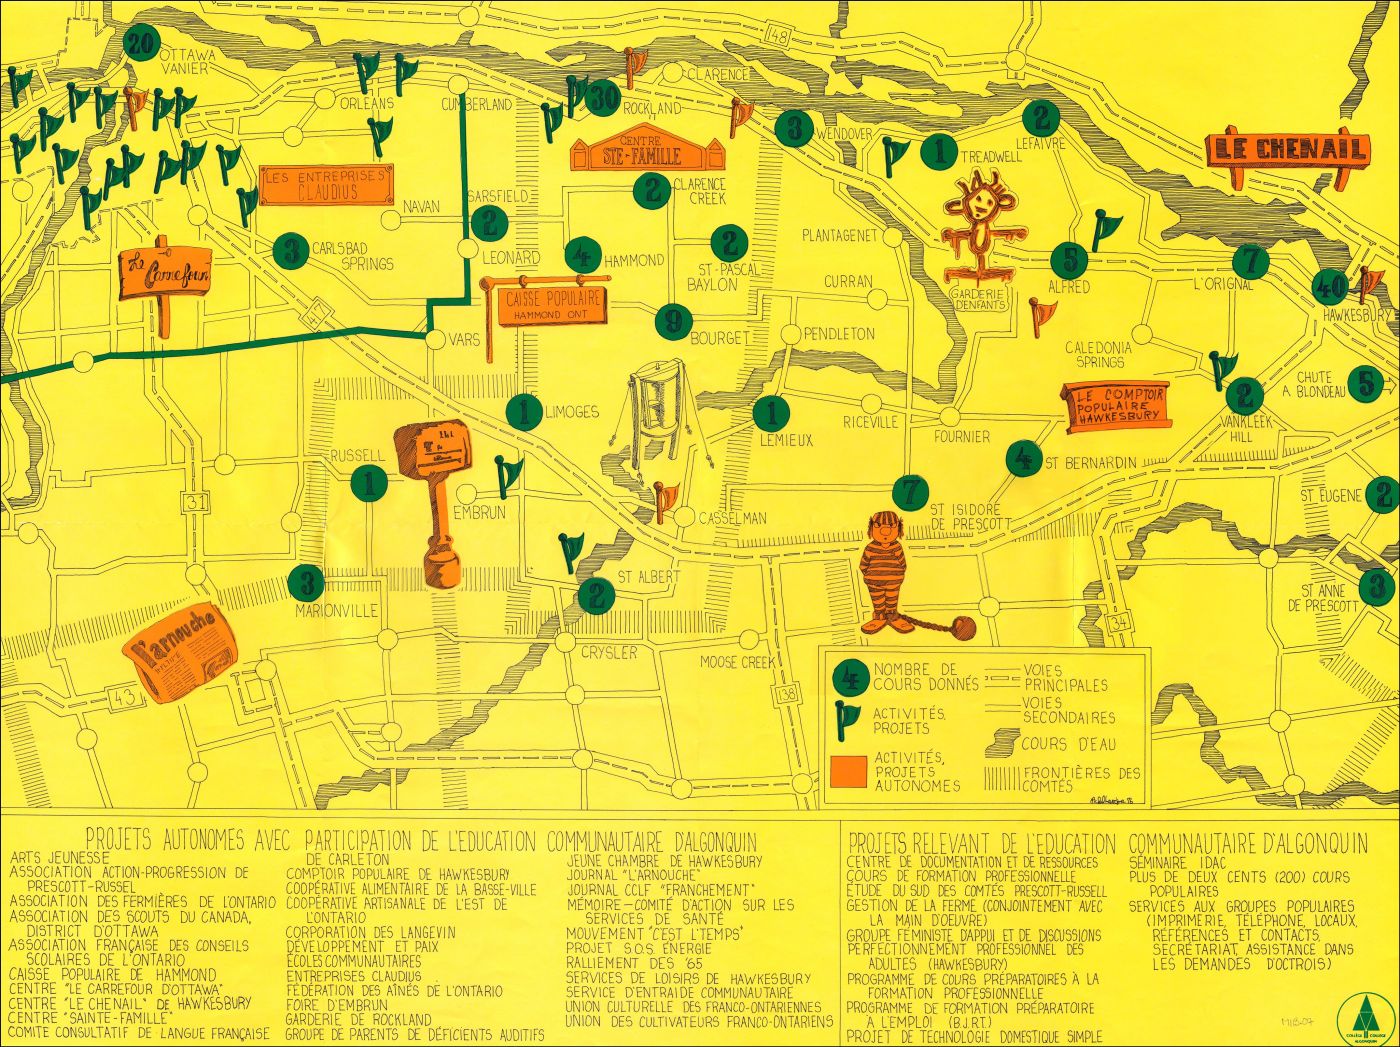 Une carte schématique, en français. En traits noirs fins, sur fond jaune, le réseau routier et les principales localités de l’Est ontarien.  Ottawa figure en haut (au nord) à gauche (à l’ouest). Un ensemble de symboles colorés marquent les lieux d’intervention de « l’éducation communautaire d’Algonquin ». Une liste détaillée des projets apparaît au bas de la carte.